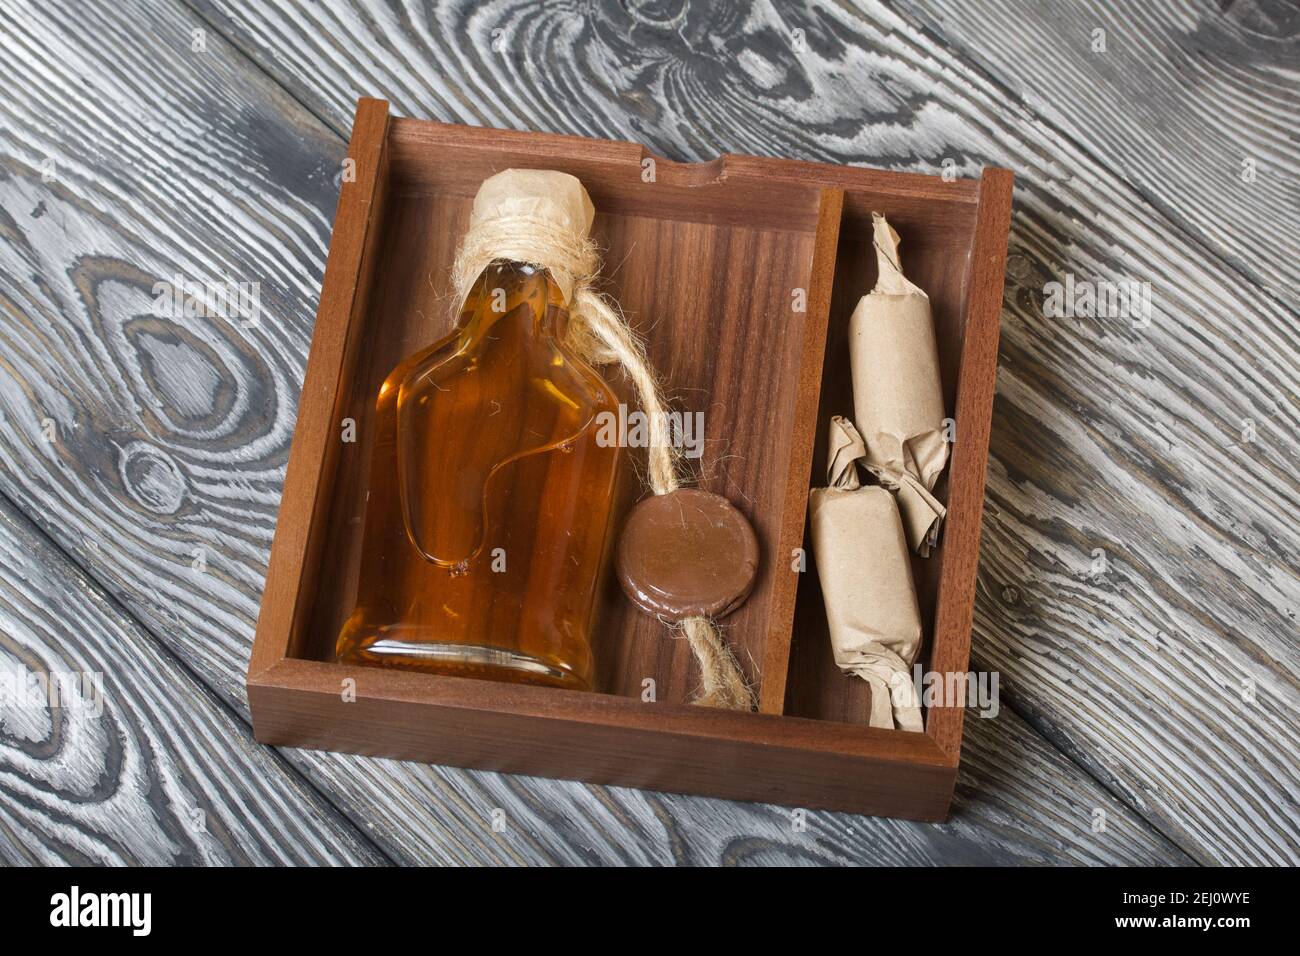 Geschenk Alkohol. Eine Flasche Alkohol und Süßigkeiten befinden sich in  einer Holzkiste Stockfotografie - Alamy